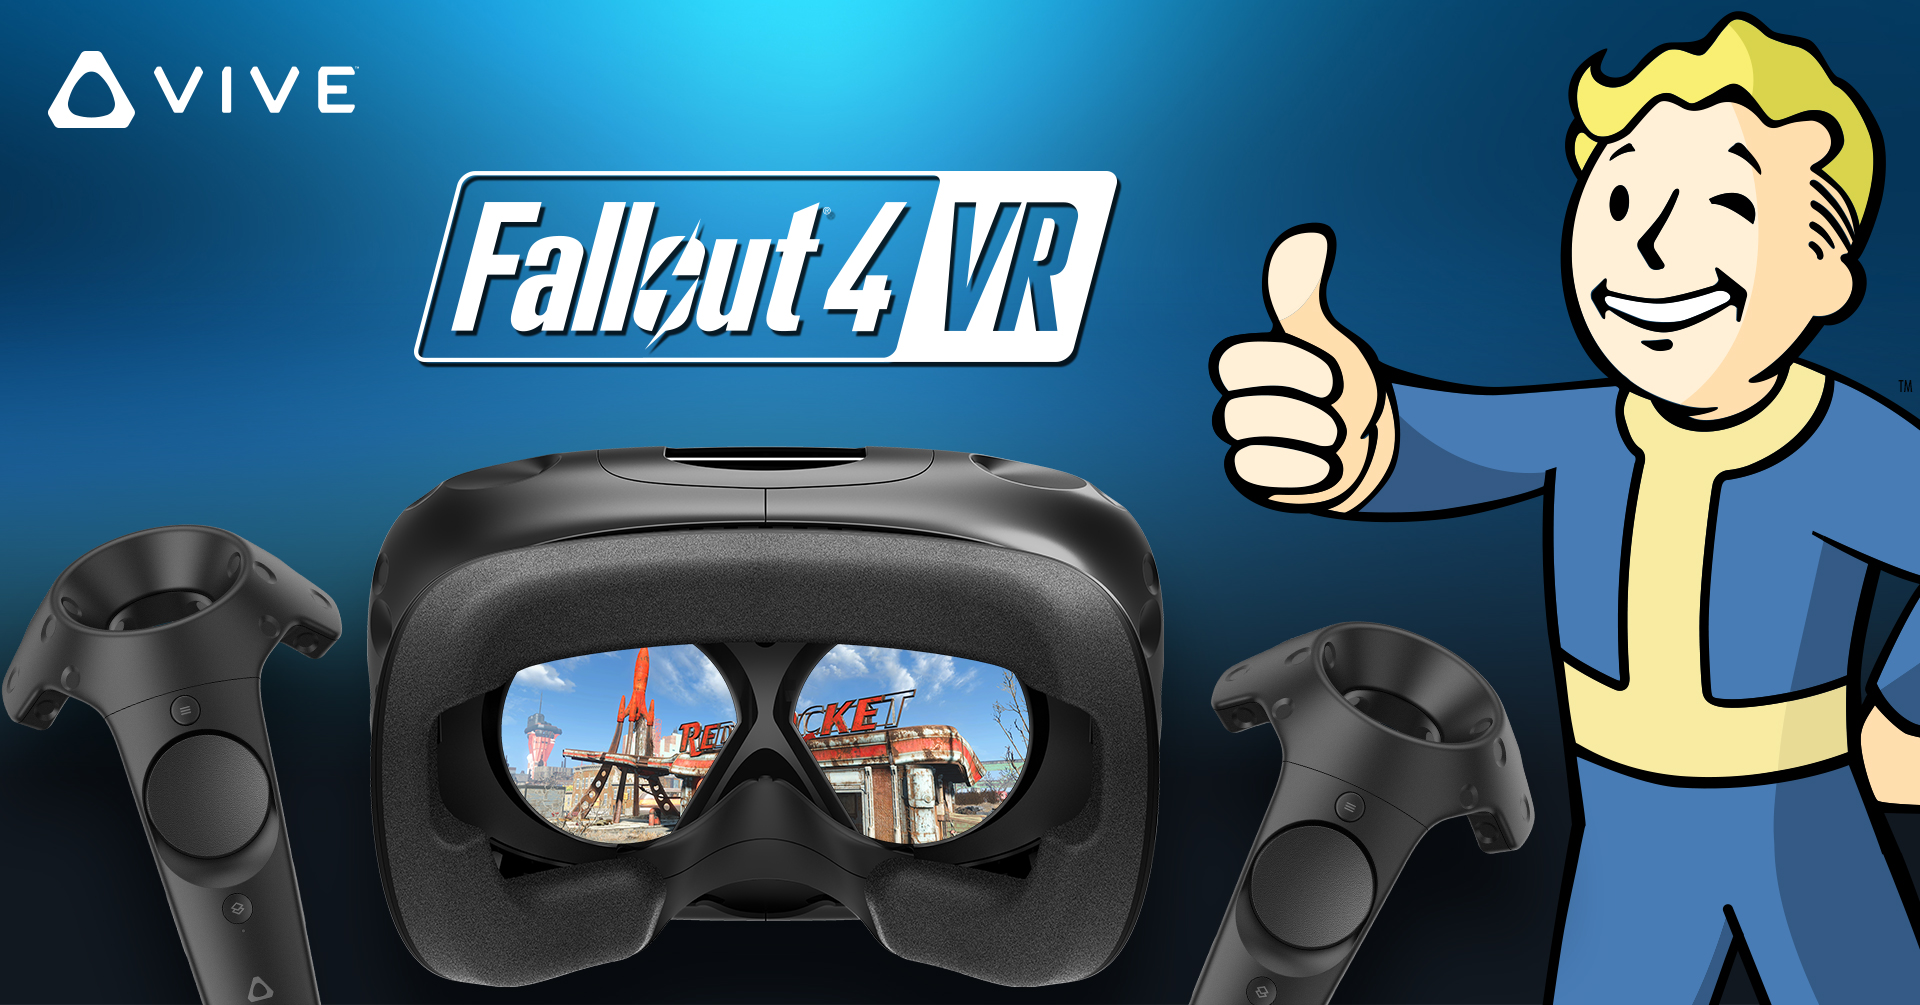 HTC VIVE Announces Fallout 4 VR Bundle - VIVE Blog